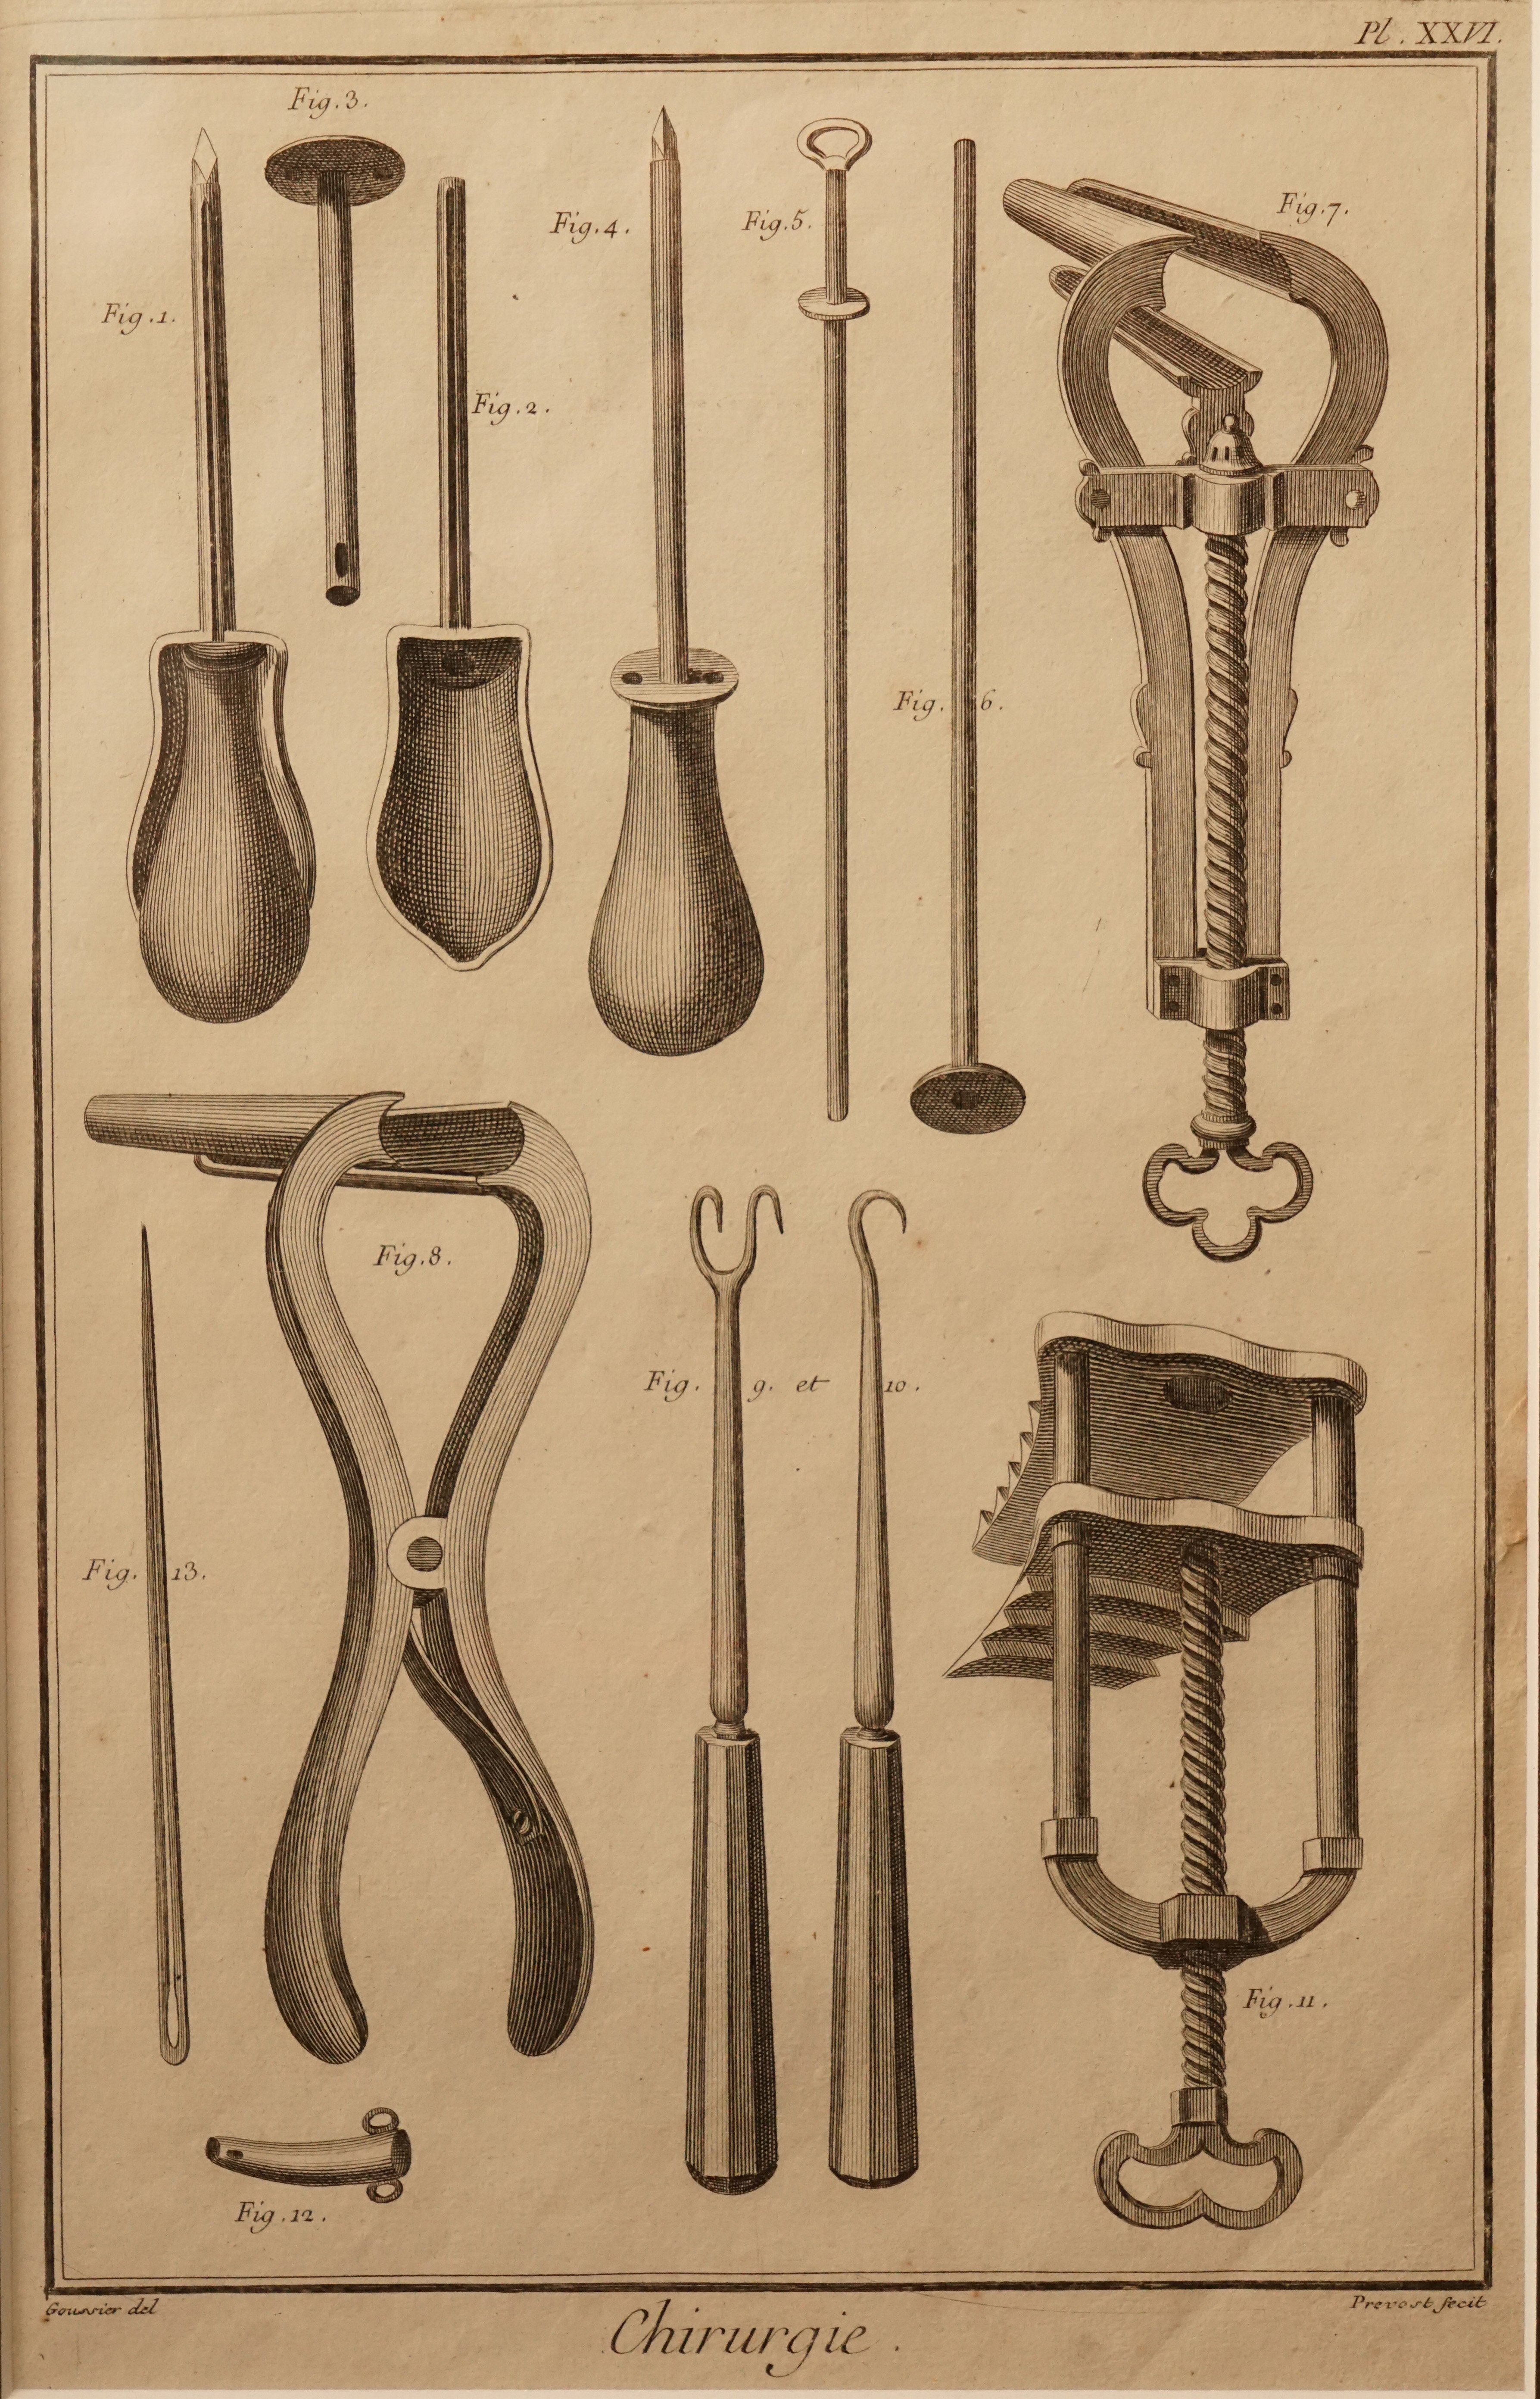 Chirurgische Instrumente - Abbildung PL XXVI (Krankenhausmuseum Bielefeld e.V. CC BY-NC-SA)